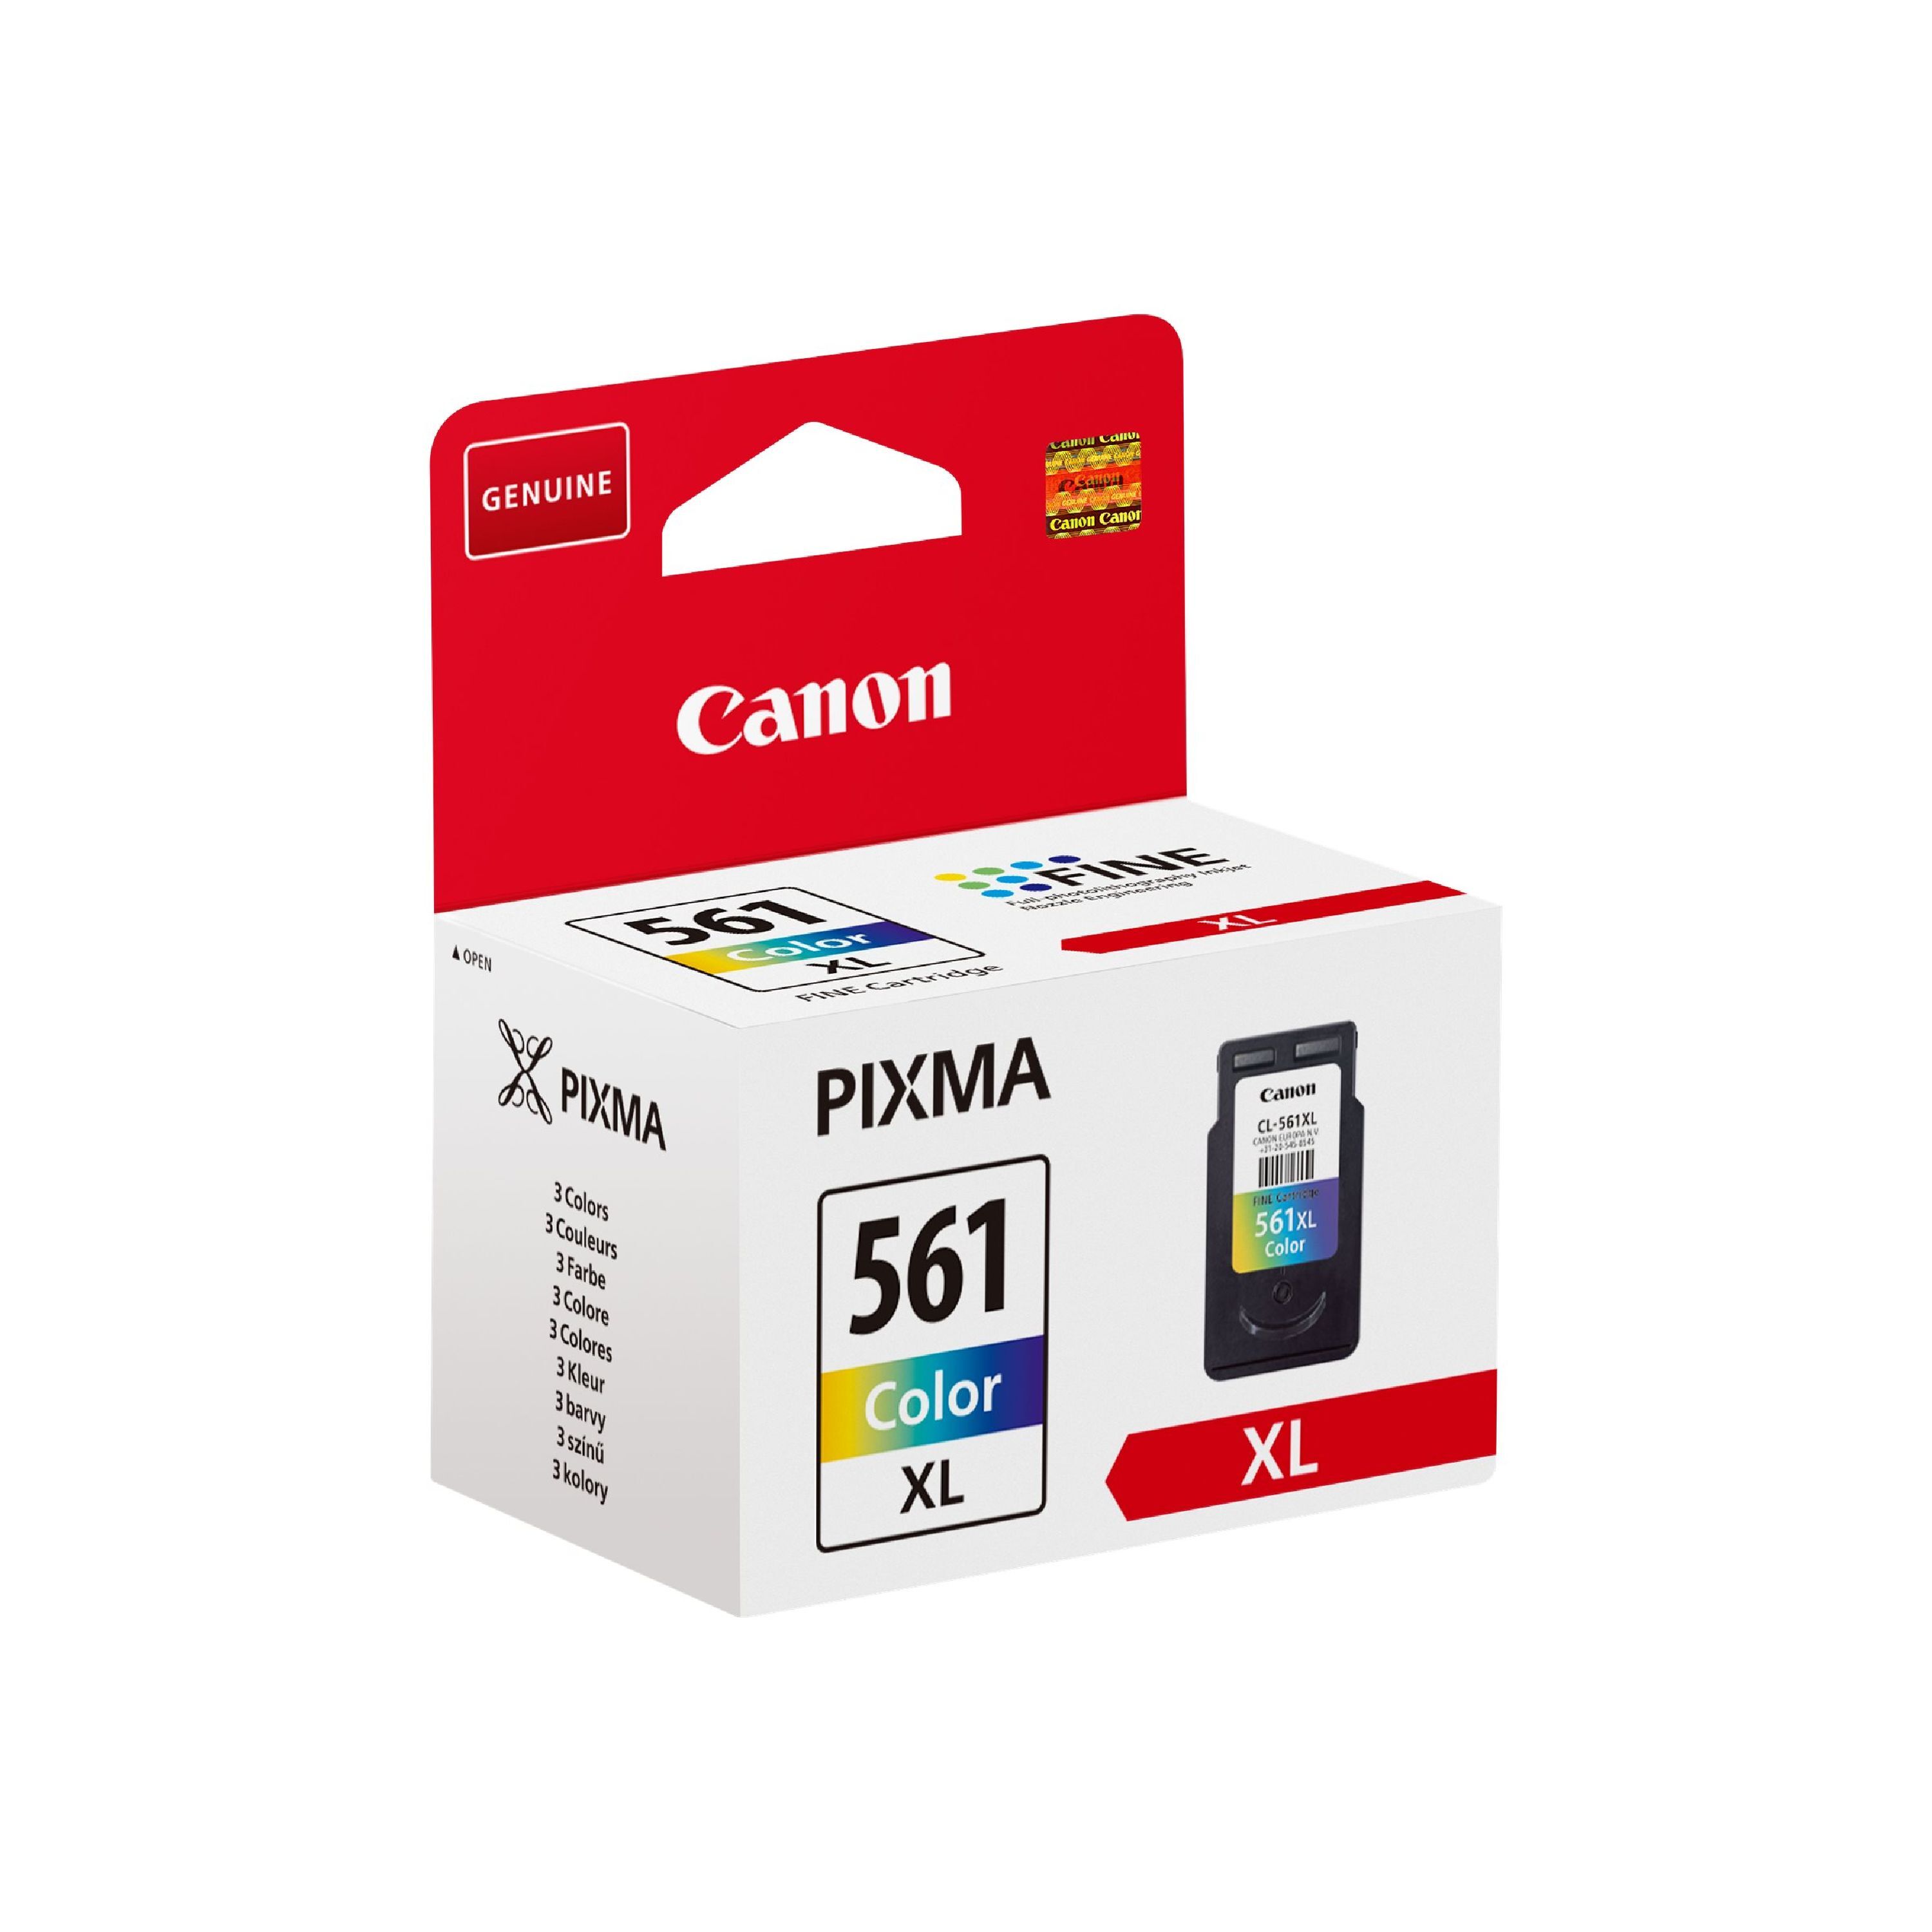 Canon Original Canon Pixma TS 5350 (3730C001 / CL-561XL) Druckerpatrone Color